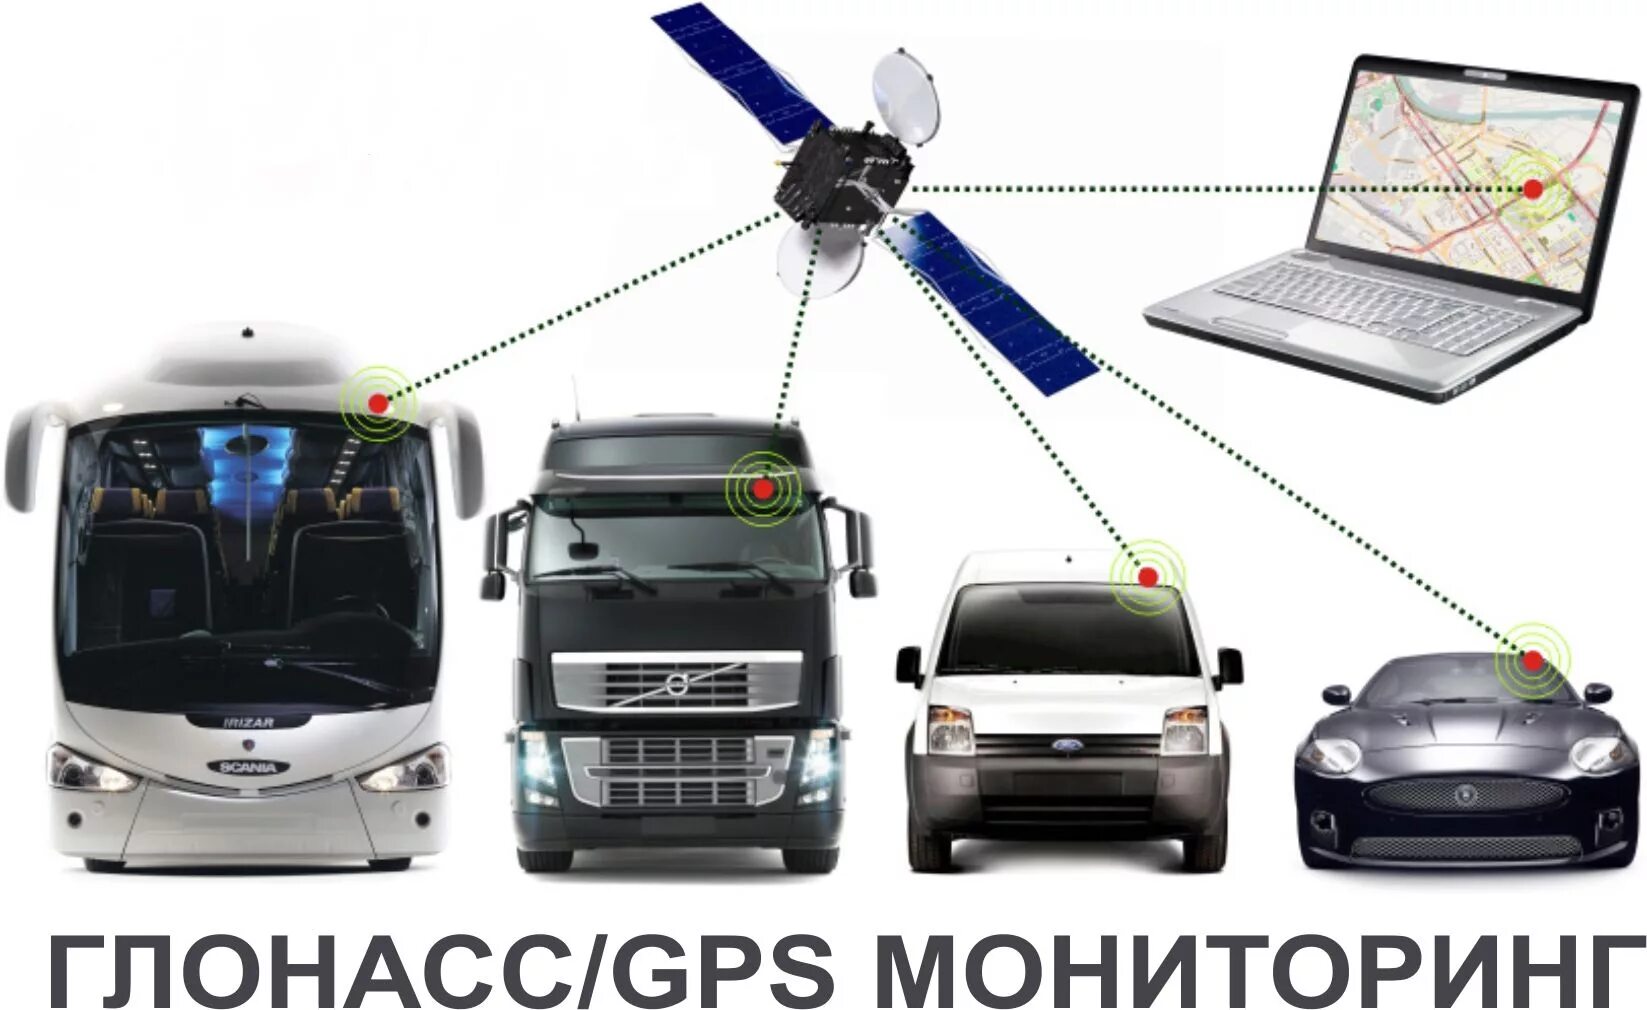 Спутниковая система ГЛОНАСС/GPS. Система ГЛОНАСС/GPS мониторинга. Система мониторинга транспорта GPS ГЛОНАСС. Системы спутникового мониторинга ГЛОНАСС. Слежение за машиной